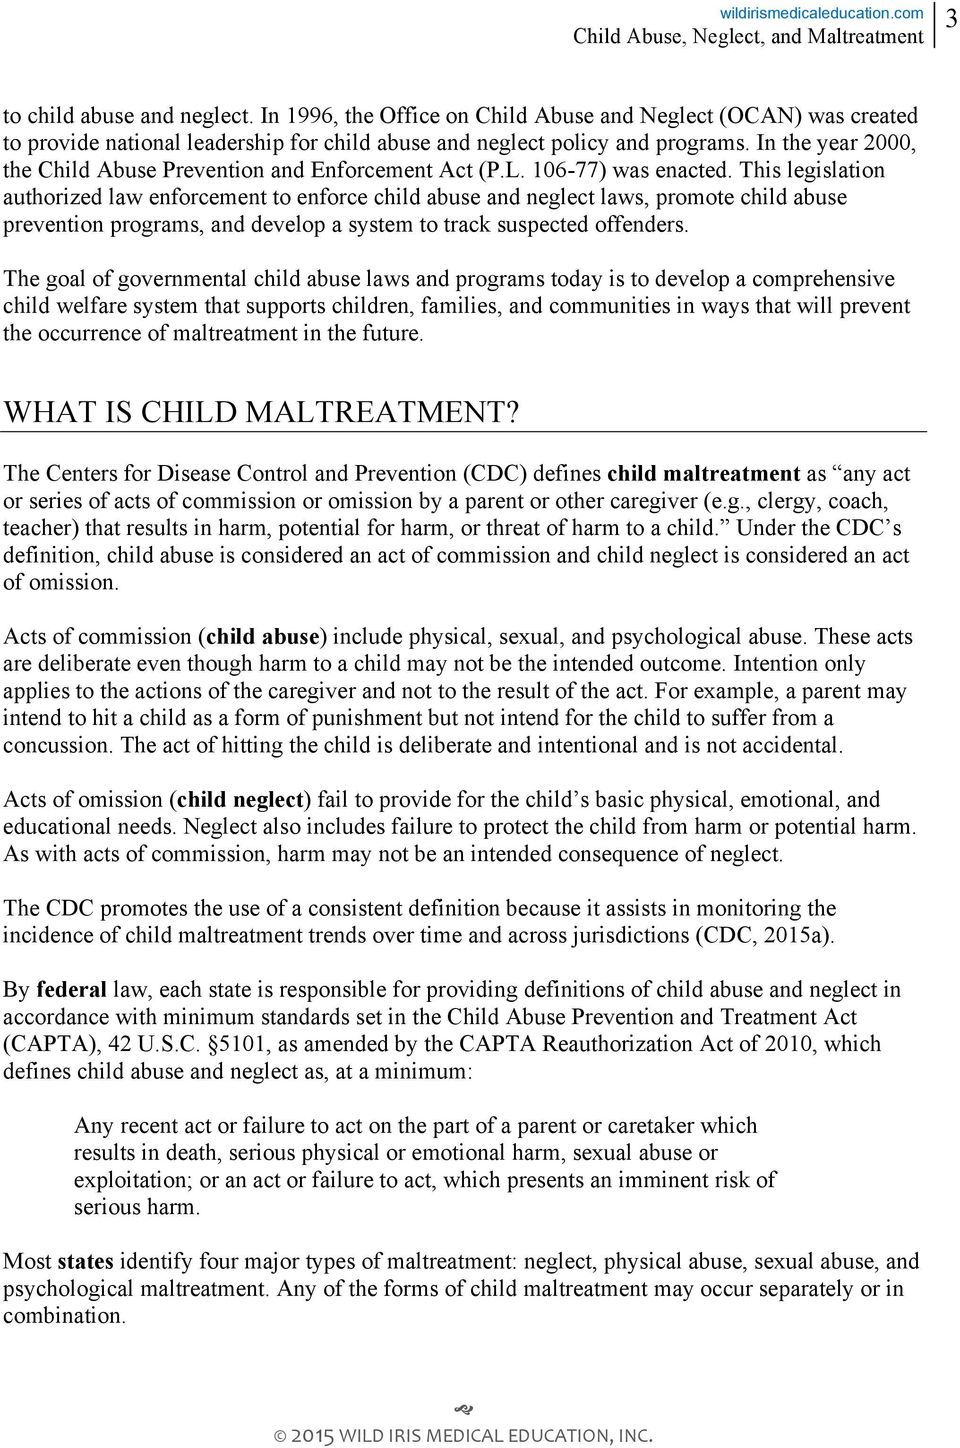 child abuse, neglect, and maltreatment - pdf